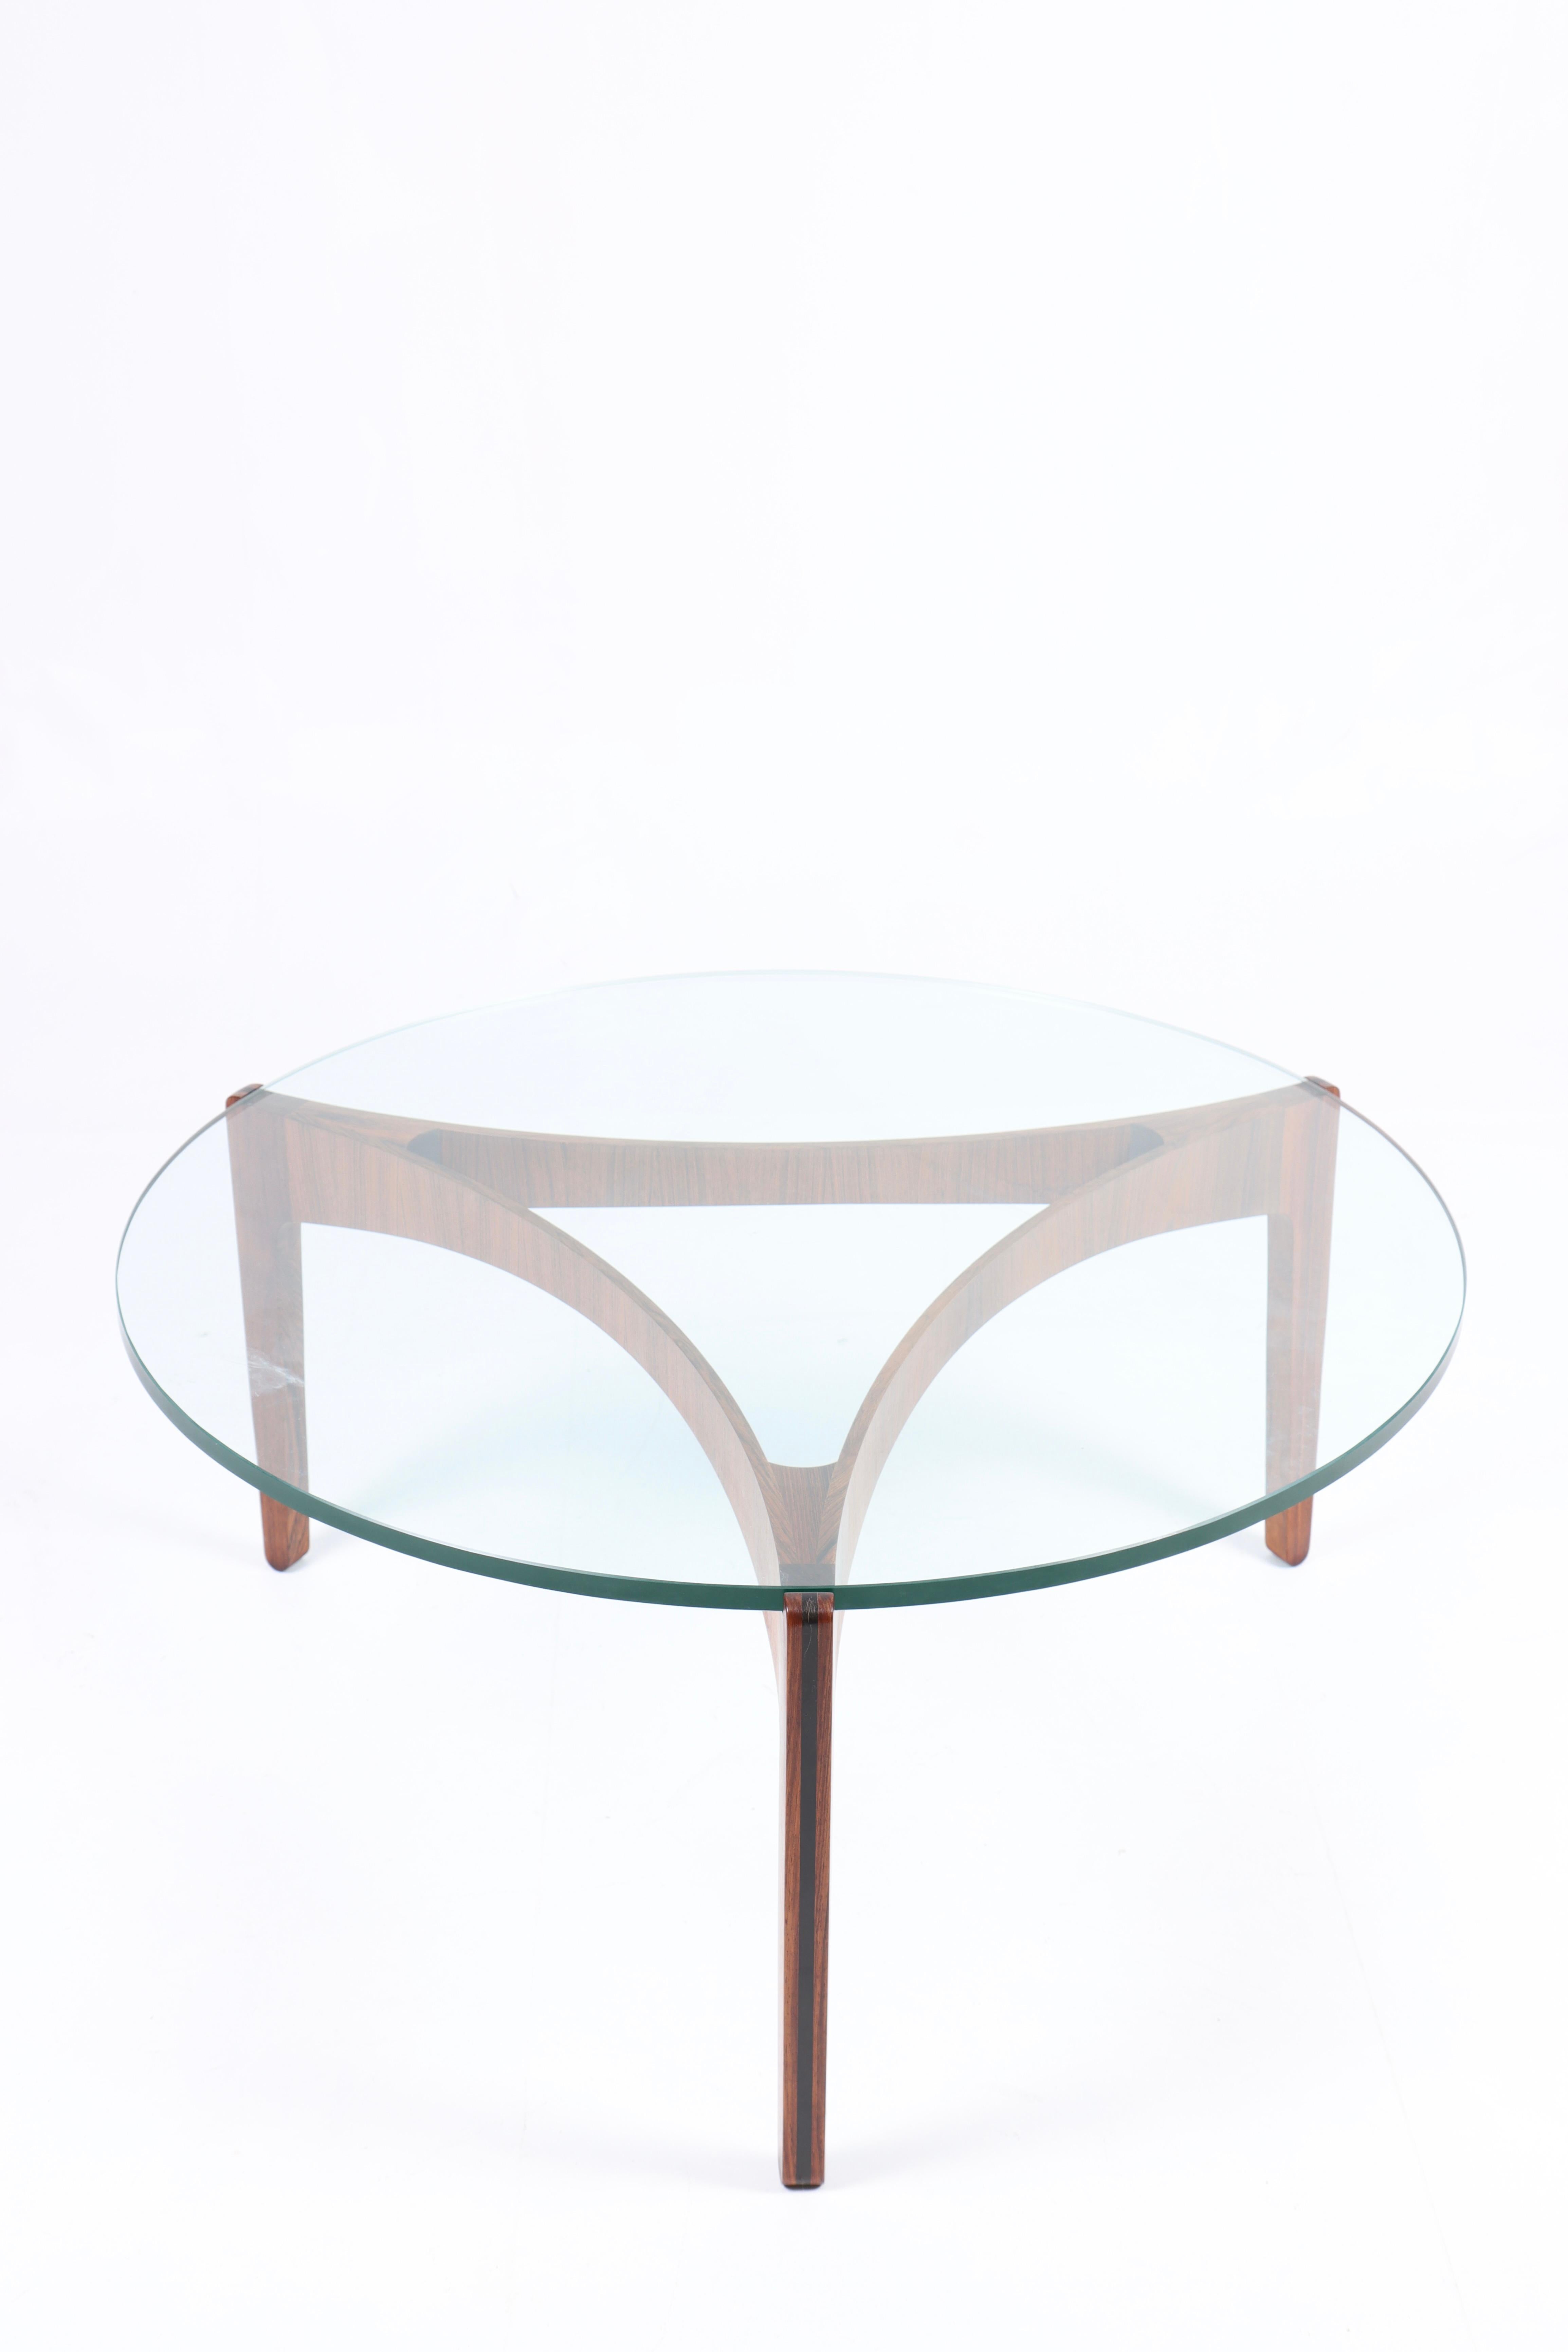 Table basse - Structure en bois de rose avec un plateau en verre - Dessinée par Svend Ellekær et fabriquée par Christian Linnebjerg Danemark dans les années 1960 - très bon état.